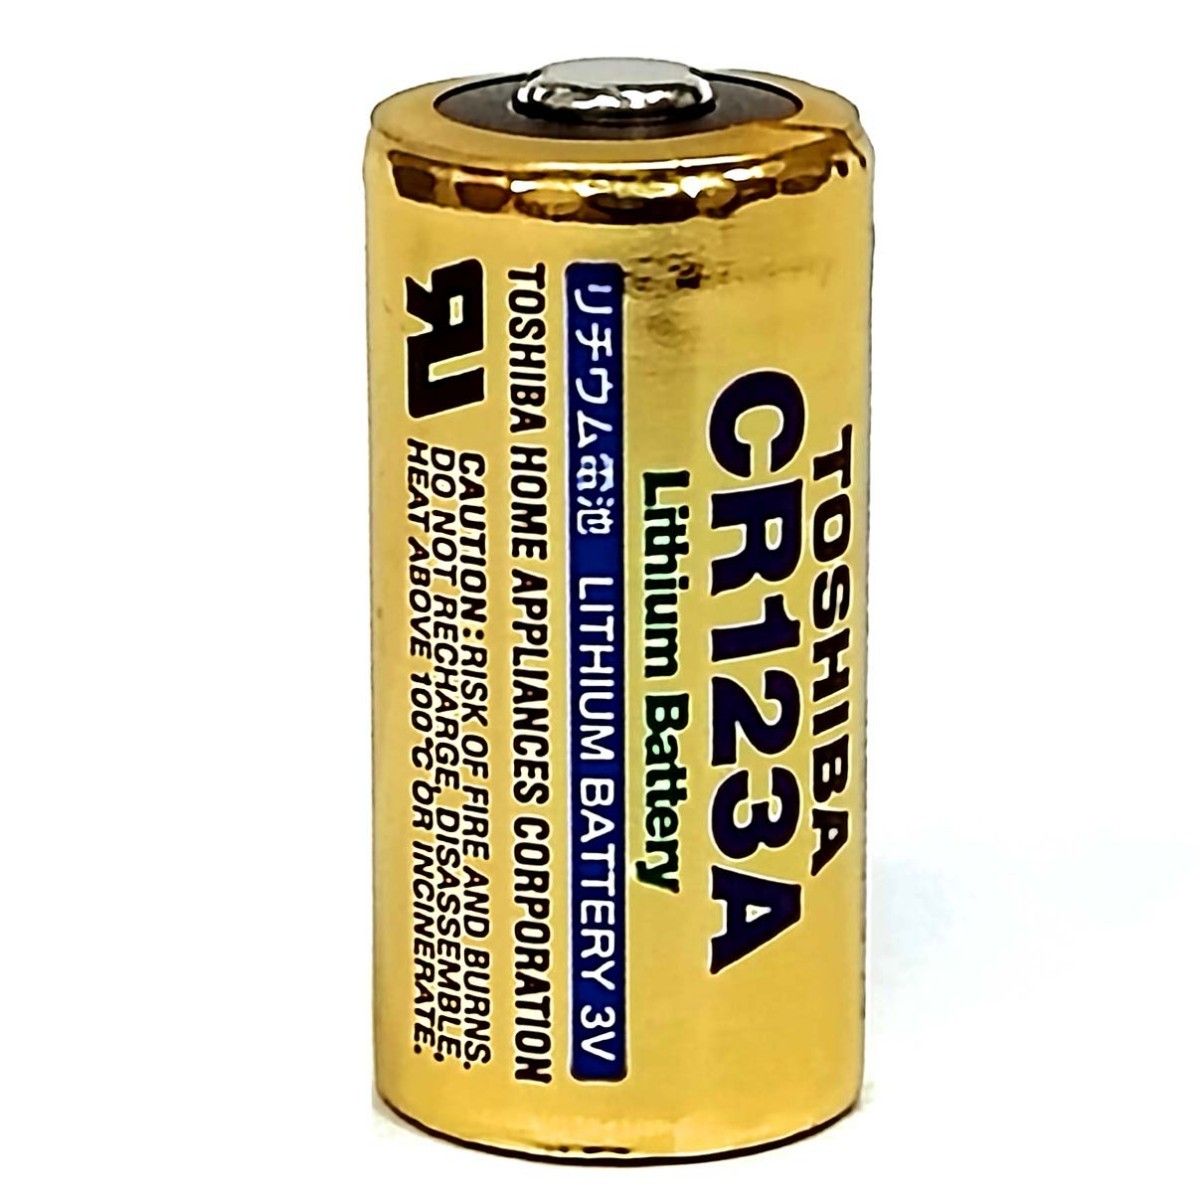 CR123A リチウム電池【2個入】3V 東芝 TOSHIBA CR123AG 2P 円筒形電池 4904530015335 新品